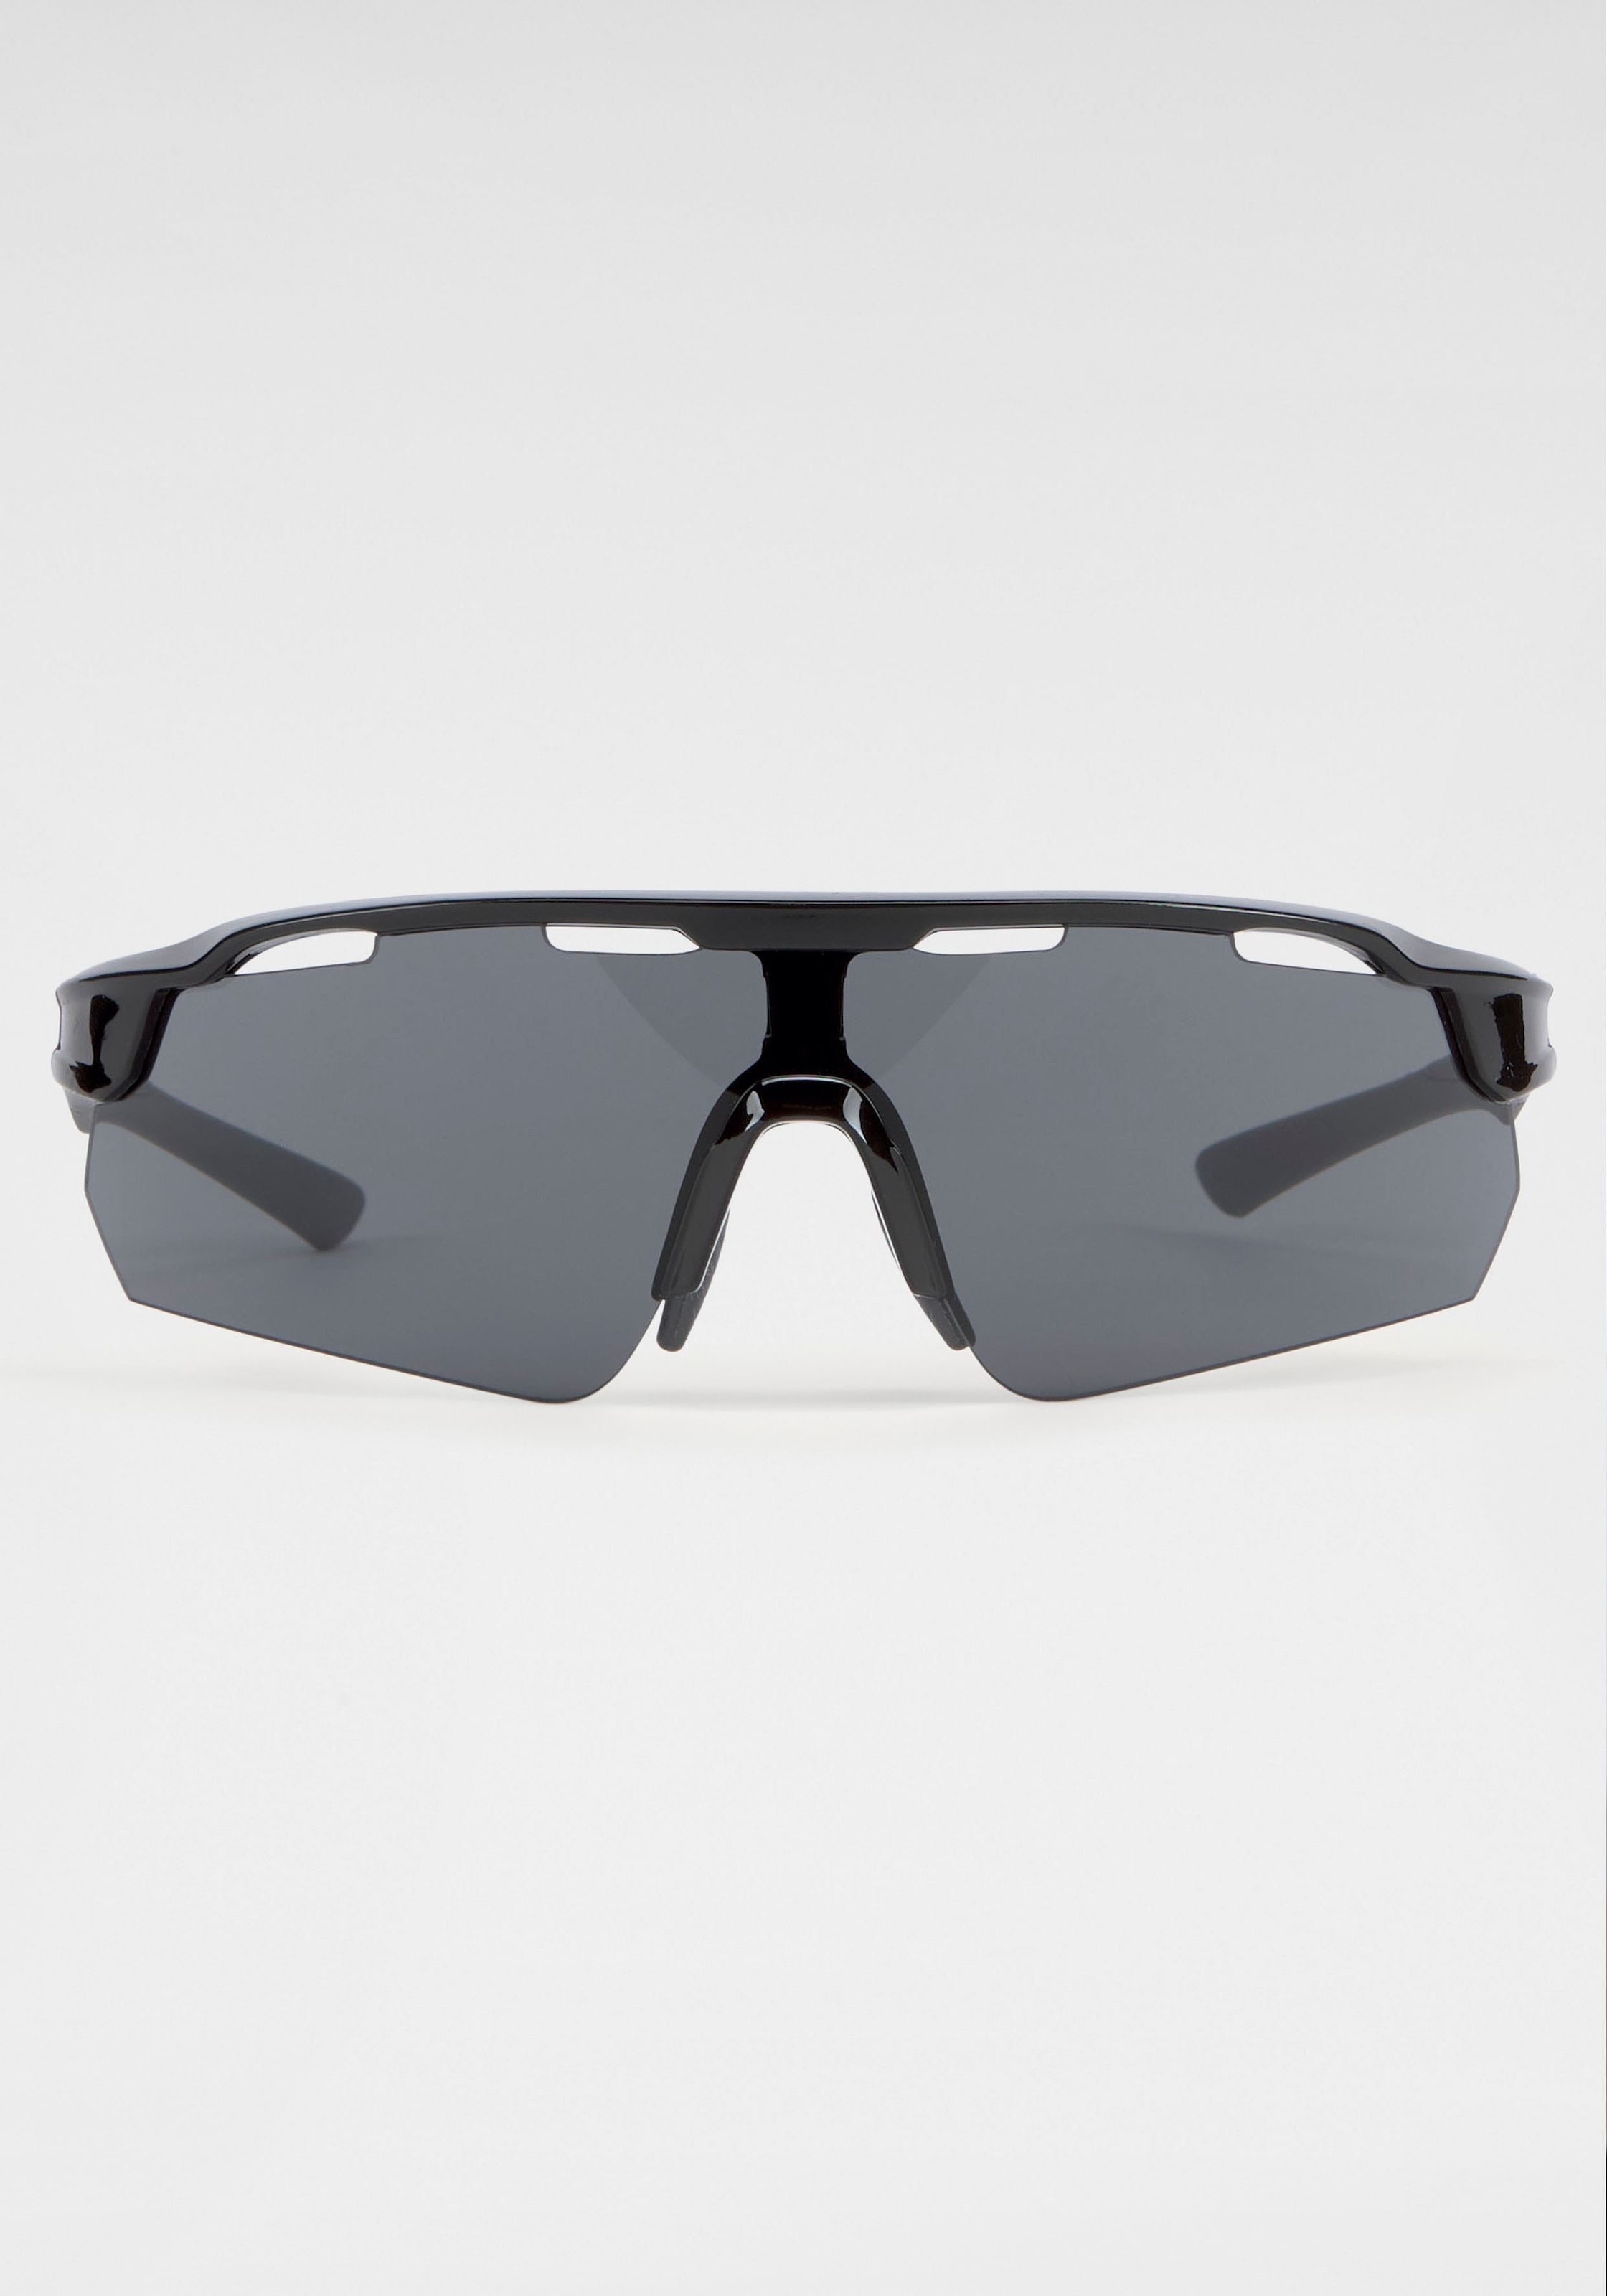 BACK IN BLACK Eyewear mit bei Gläsern gebogenen Sonnenbrille